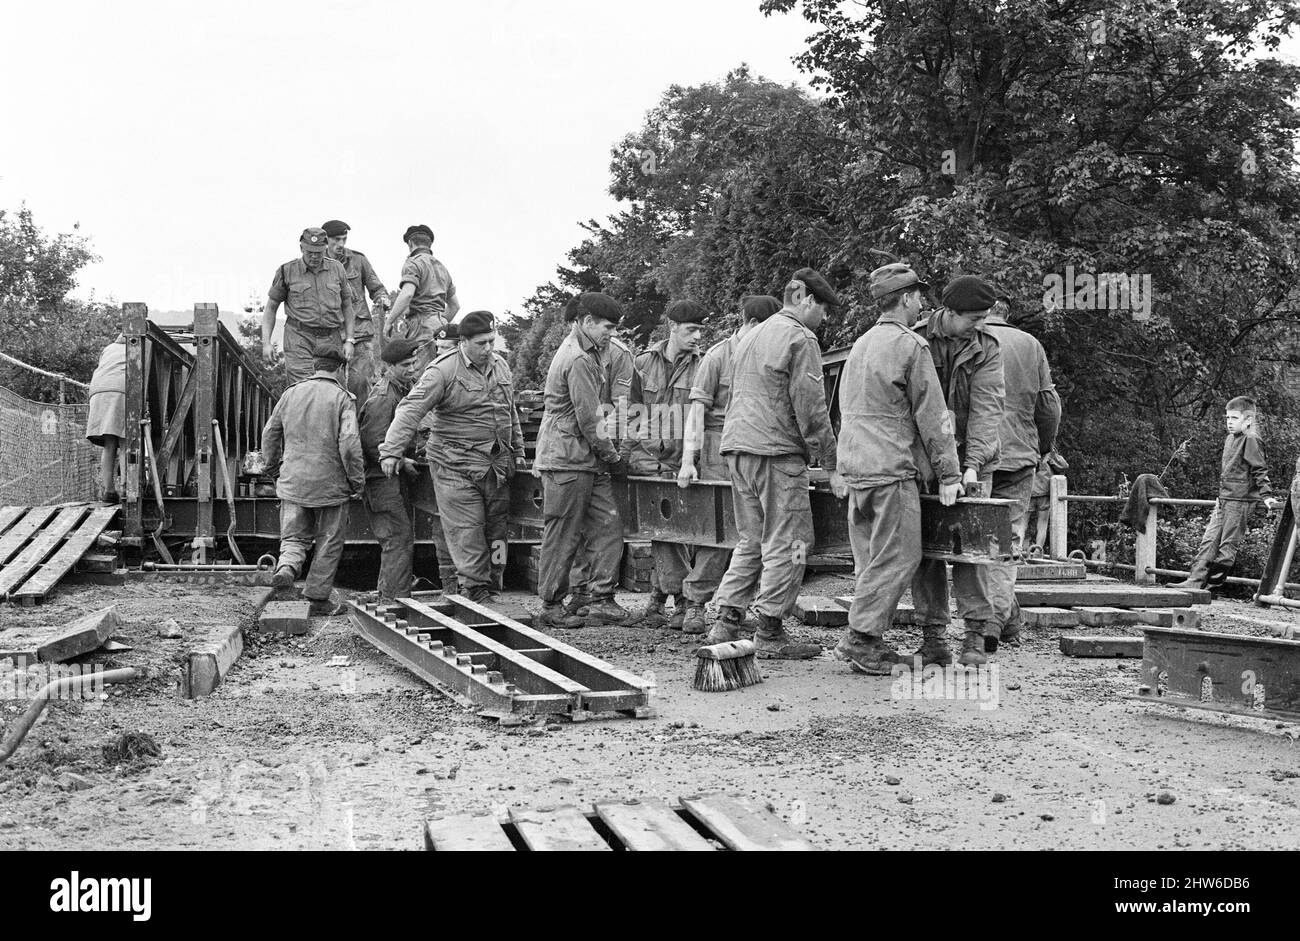 Les soldats des Royal Engineers construisent des ponts pour aider les résidents locaux après de fortes inondations dans le Kent. 17th septembre 1968. Banque D'Images